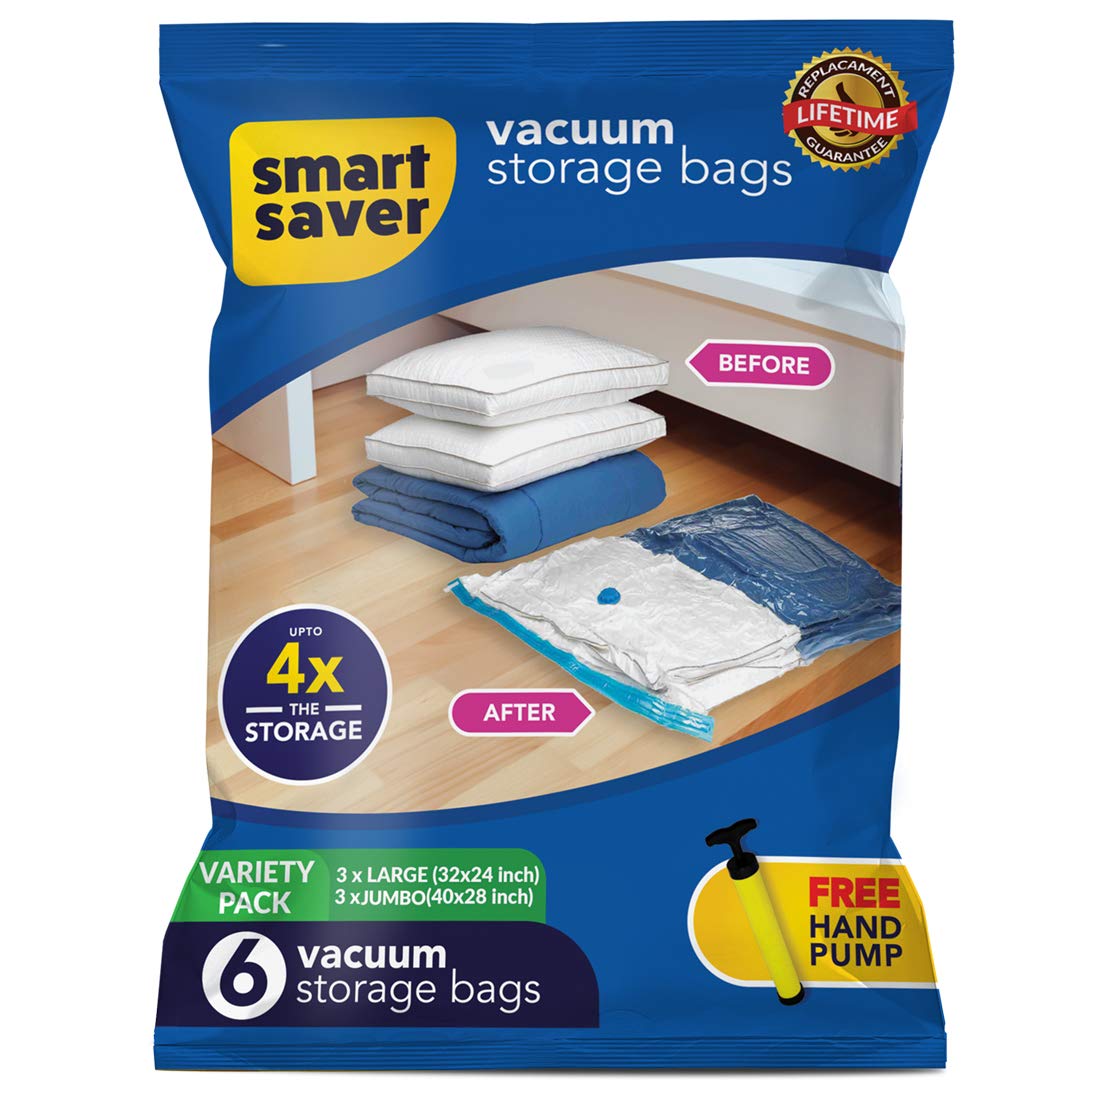 Vacuum storage bags by BigBowl